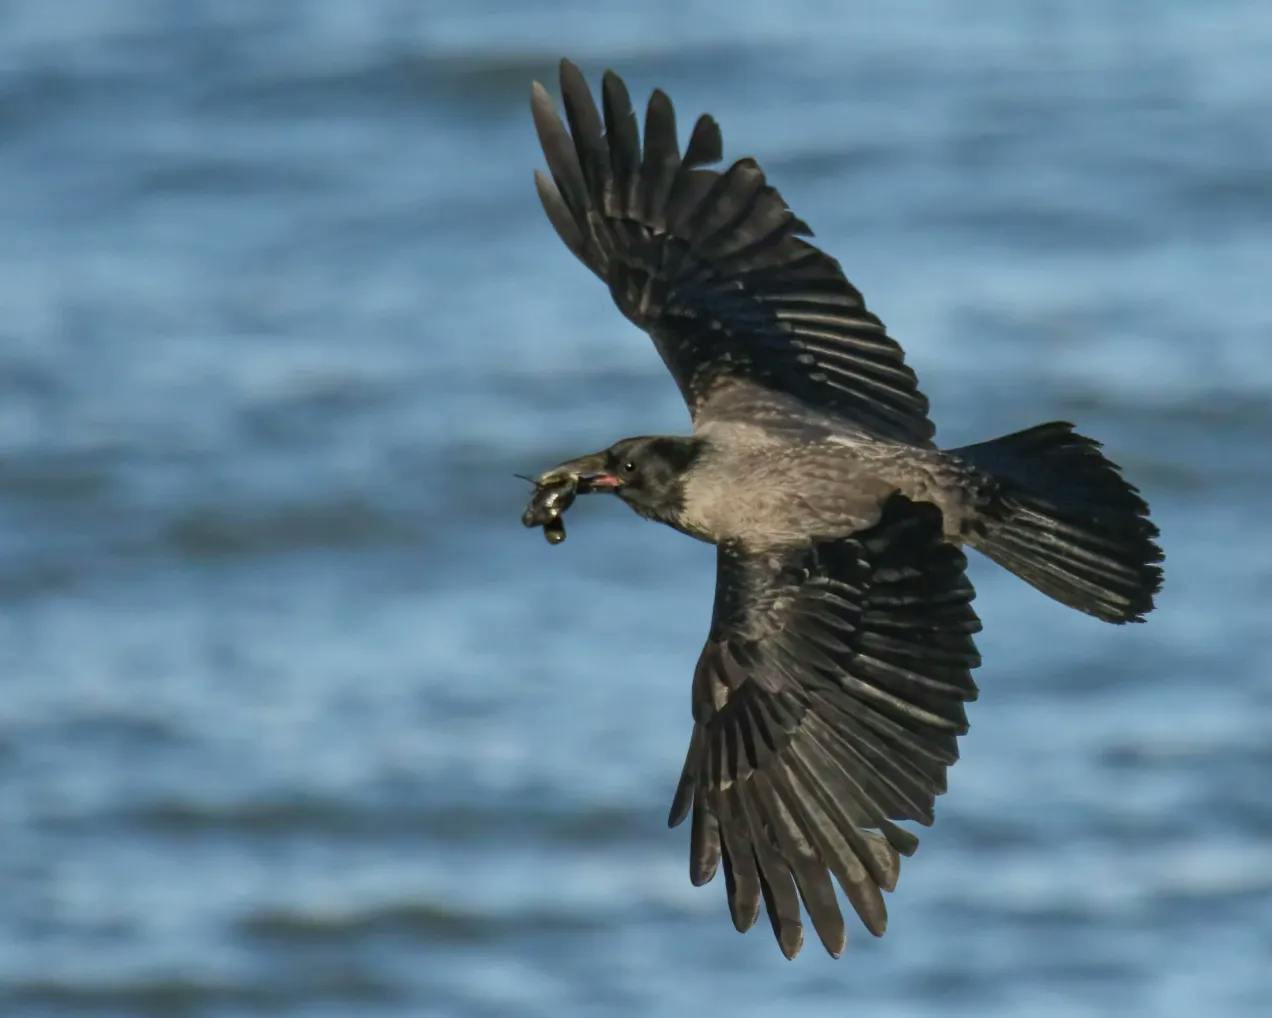 Flyvende kråke med utstrakte, svarte vinger som har noe sort og slimete i munnen. Blå sjø i bakgrunnen.